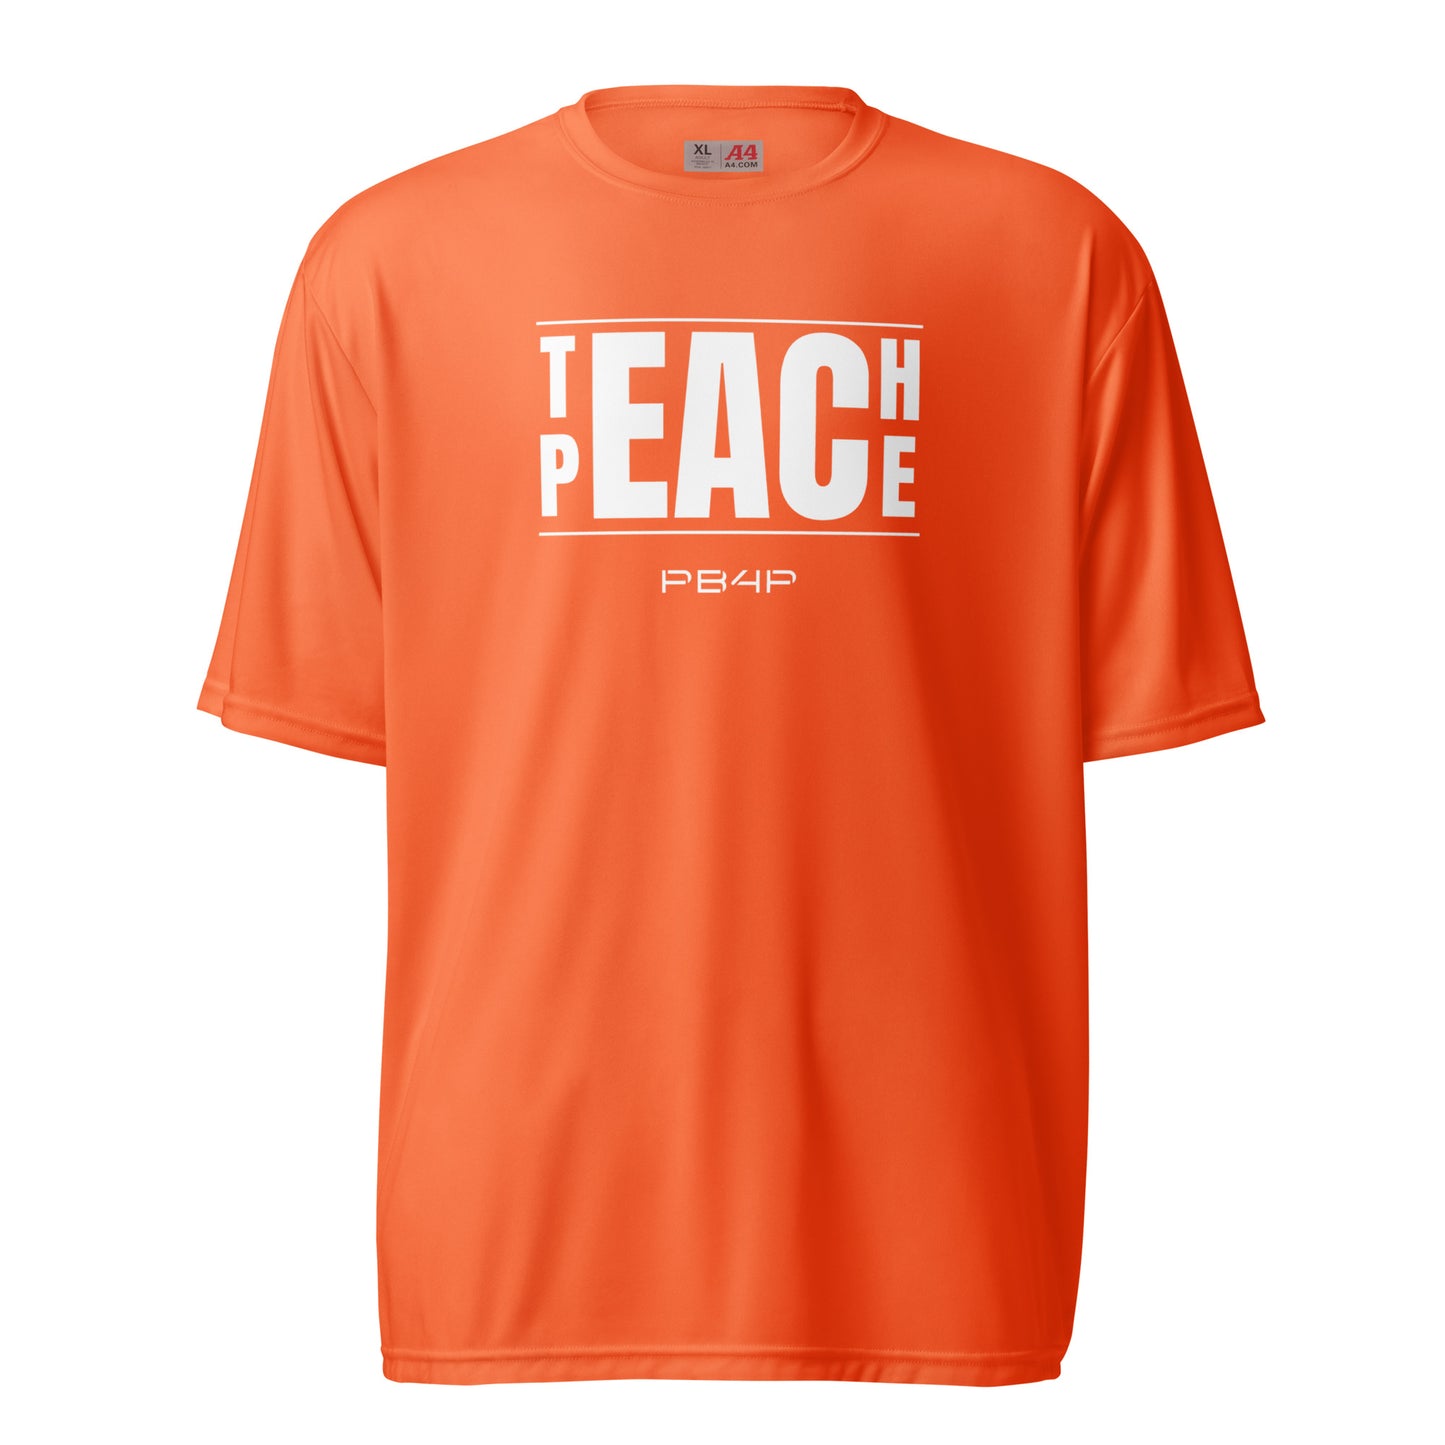 Teach Peace Performance Tee